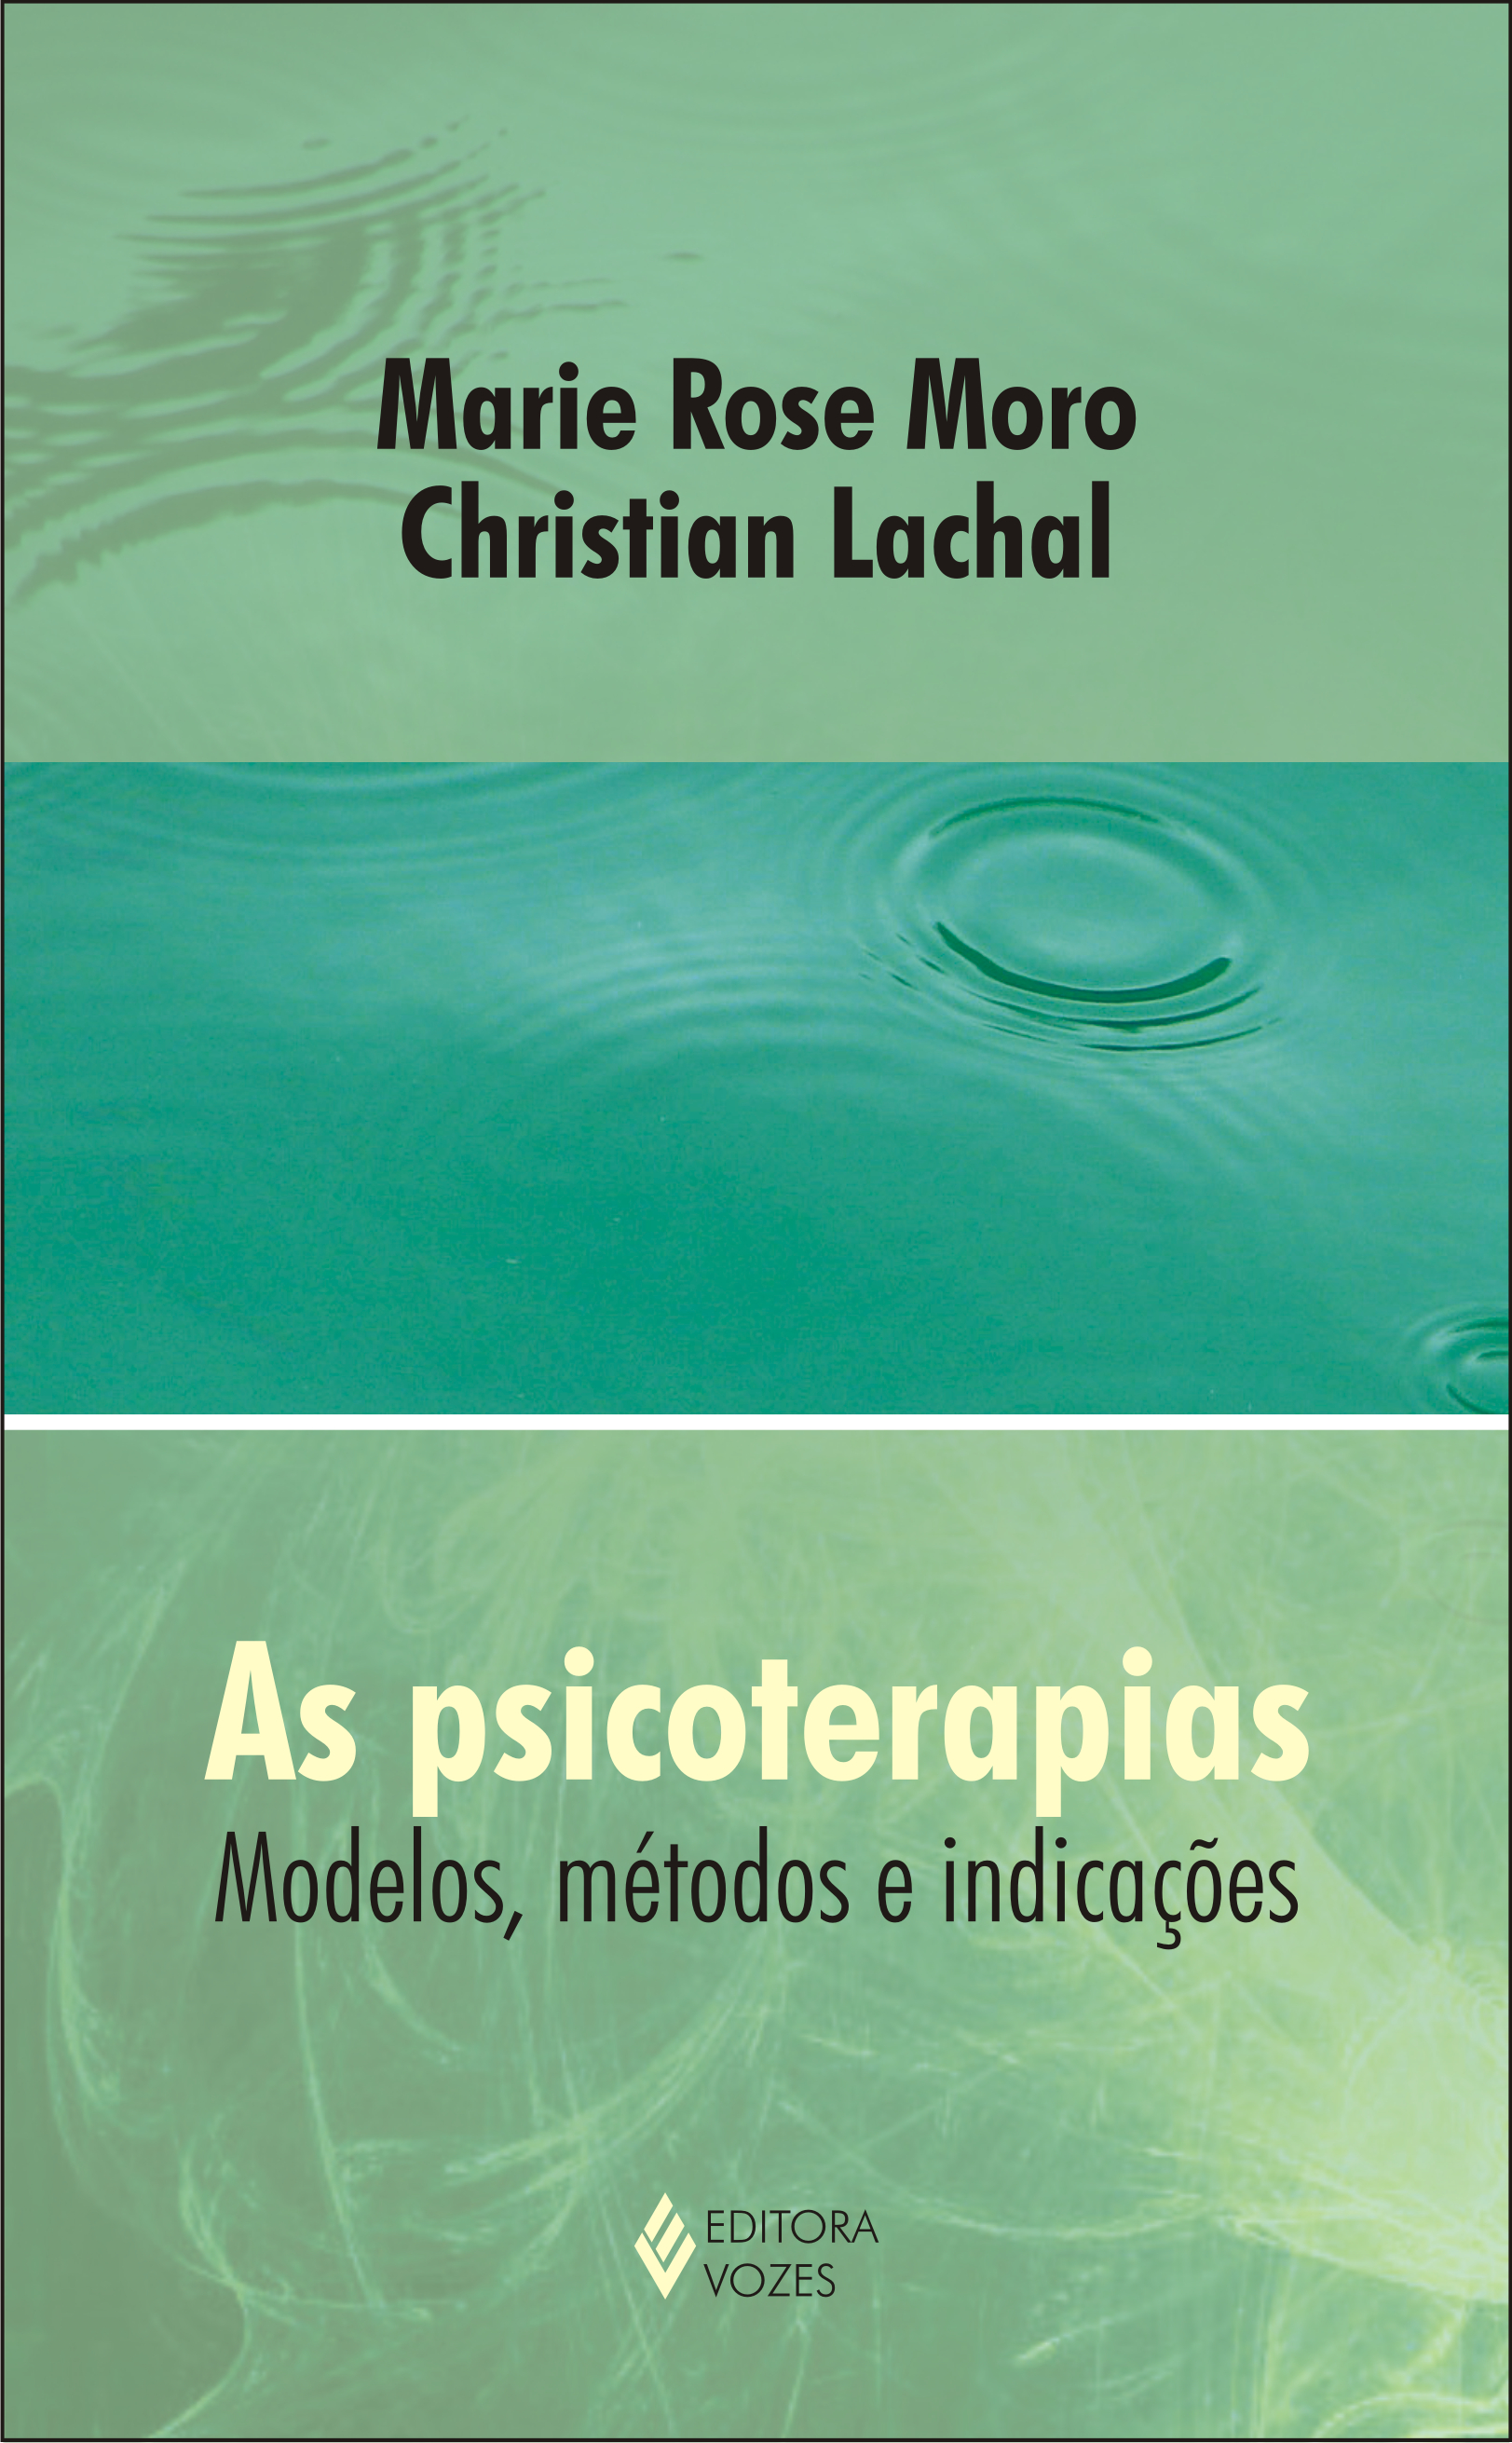 Psicoterapias, As: Modelos, Métodos e Indicações